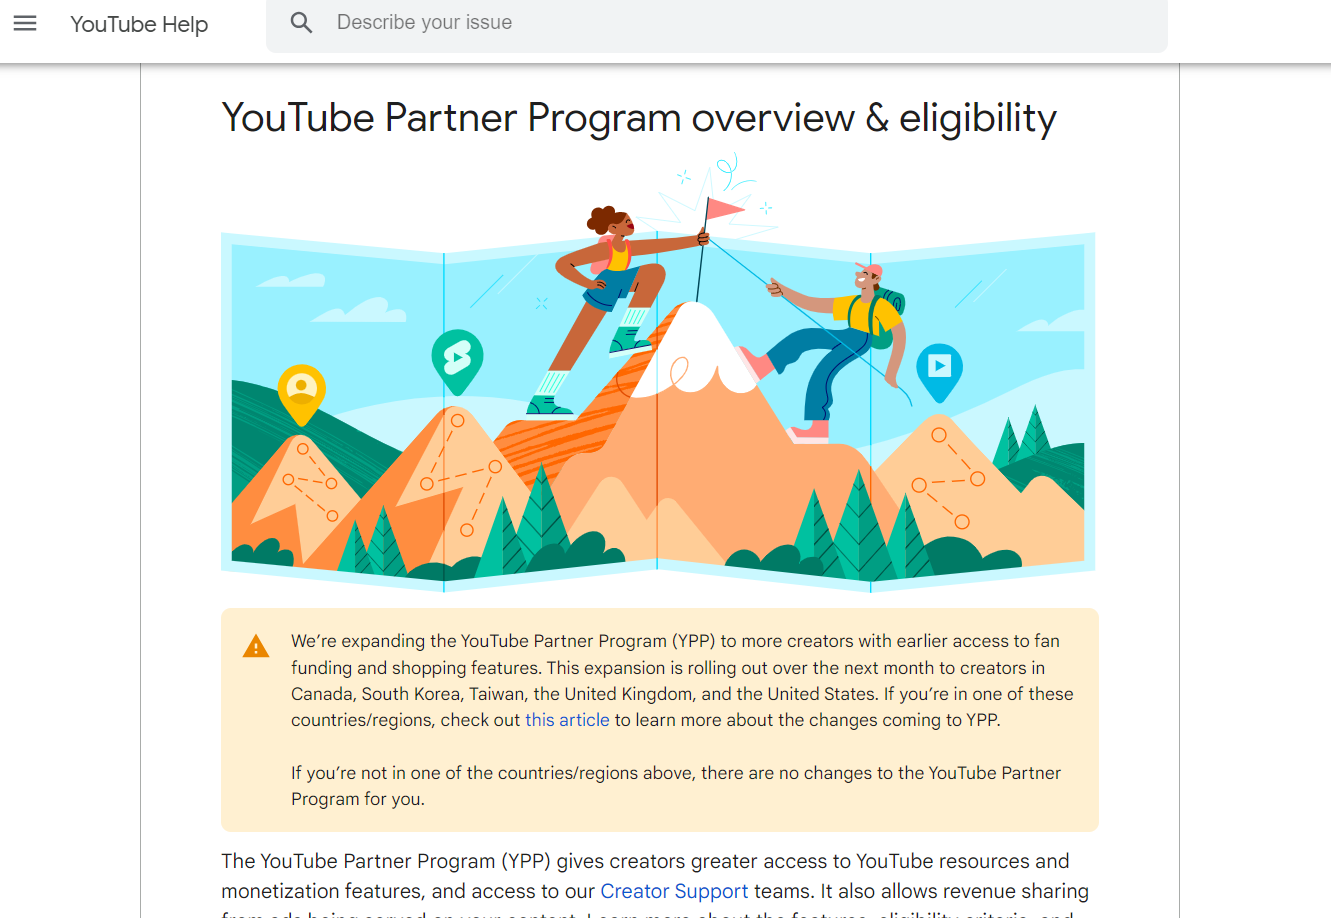 youtube partner program